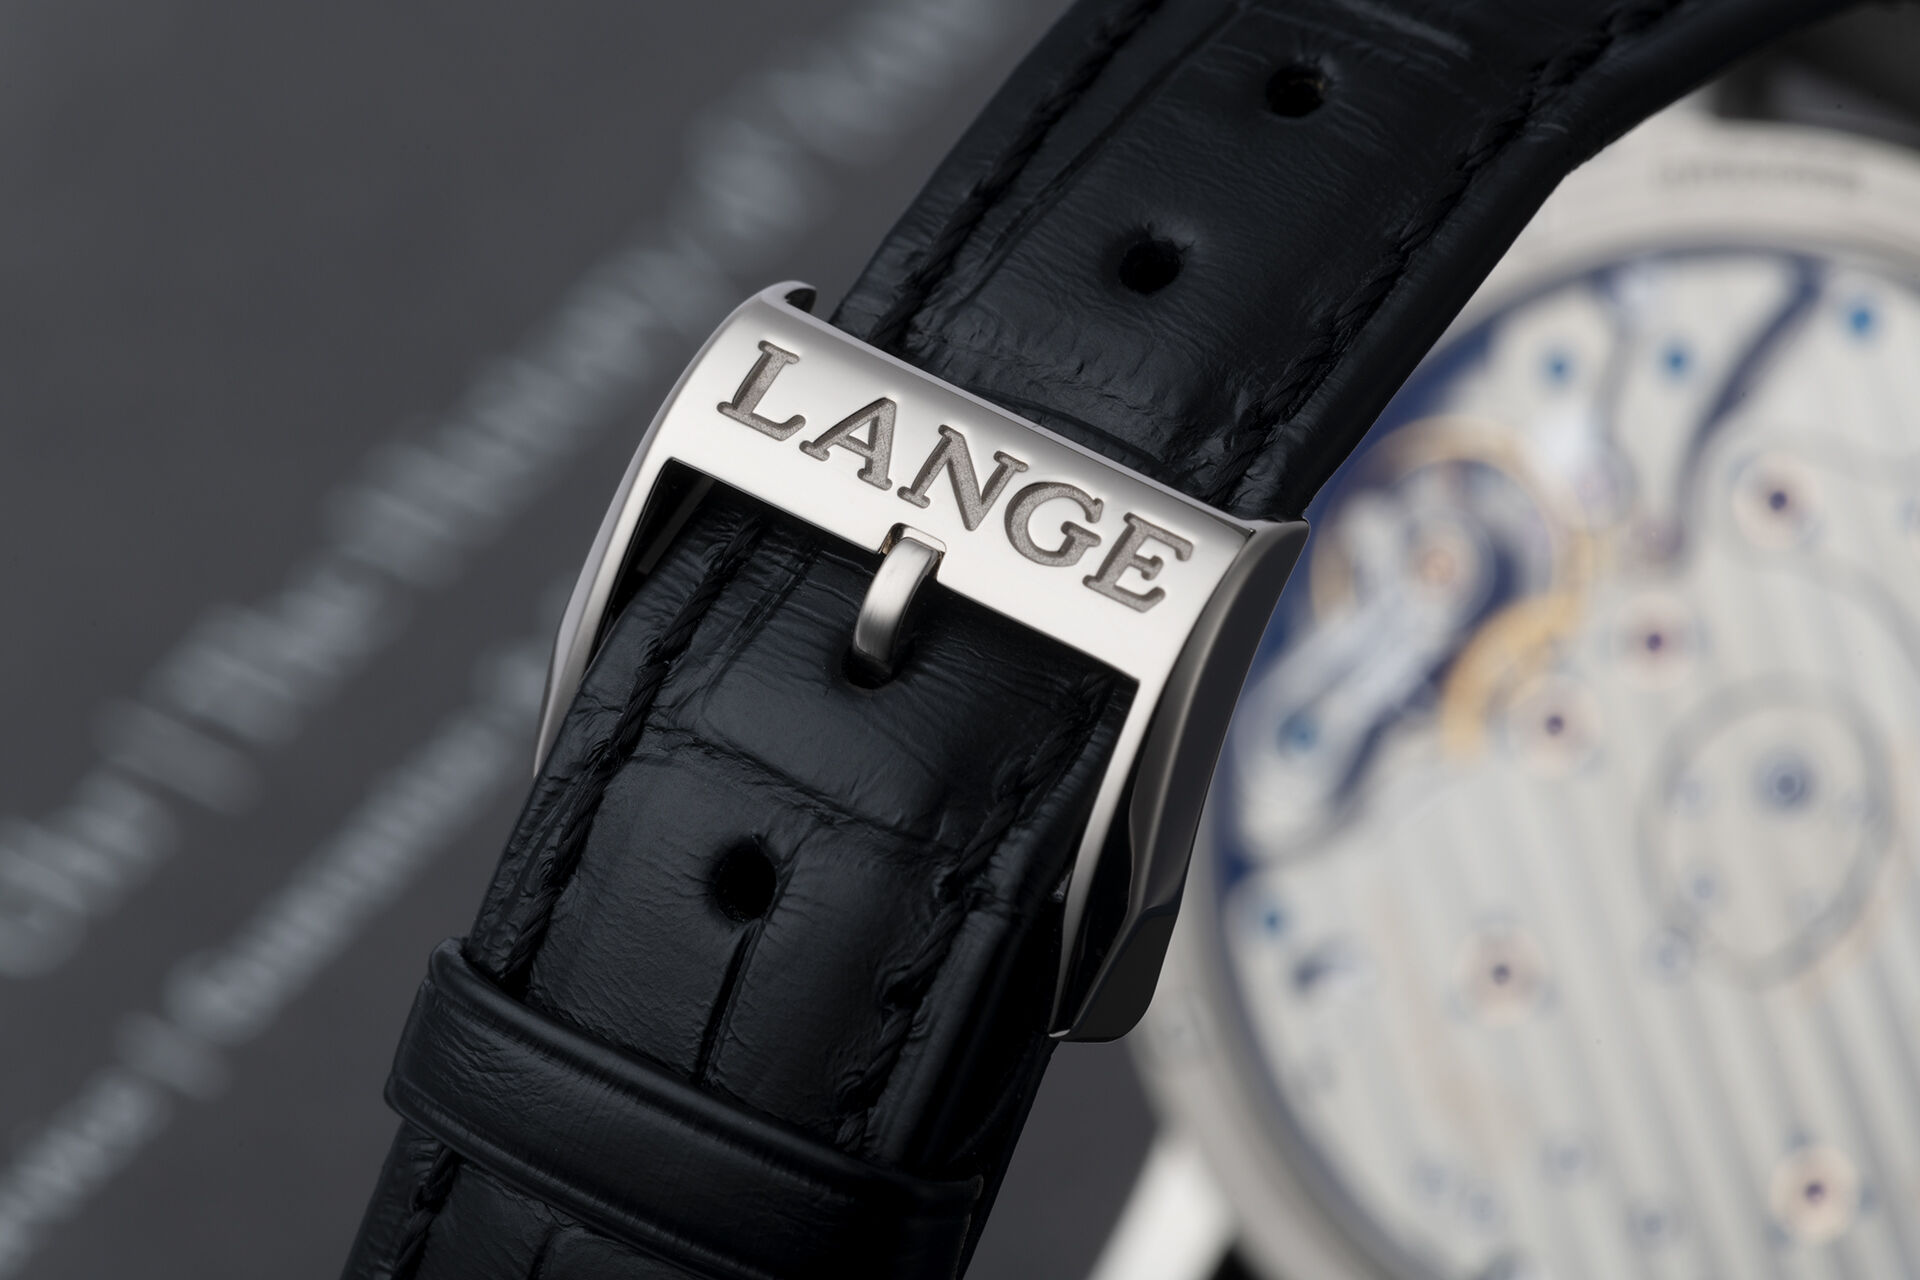 ref 117.028 | Large Date - 41mm | A. Lange & Söhne Grand Lange 1